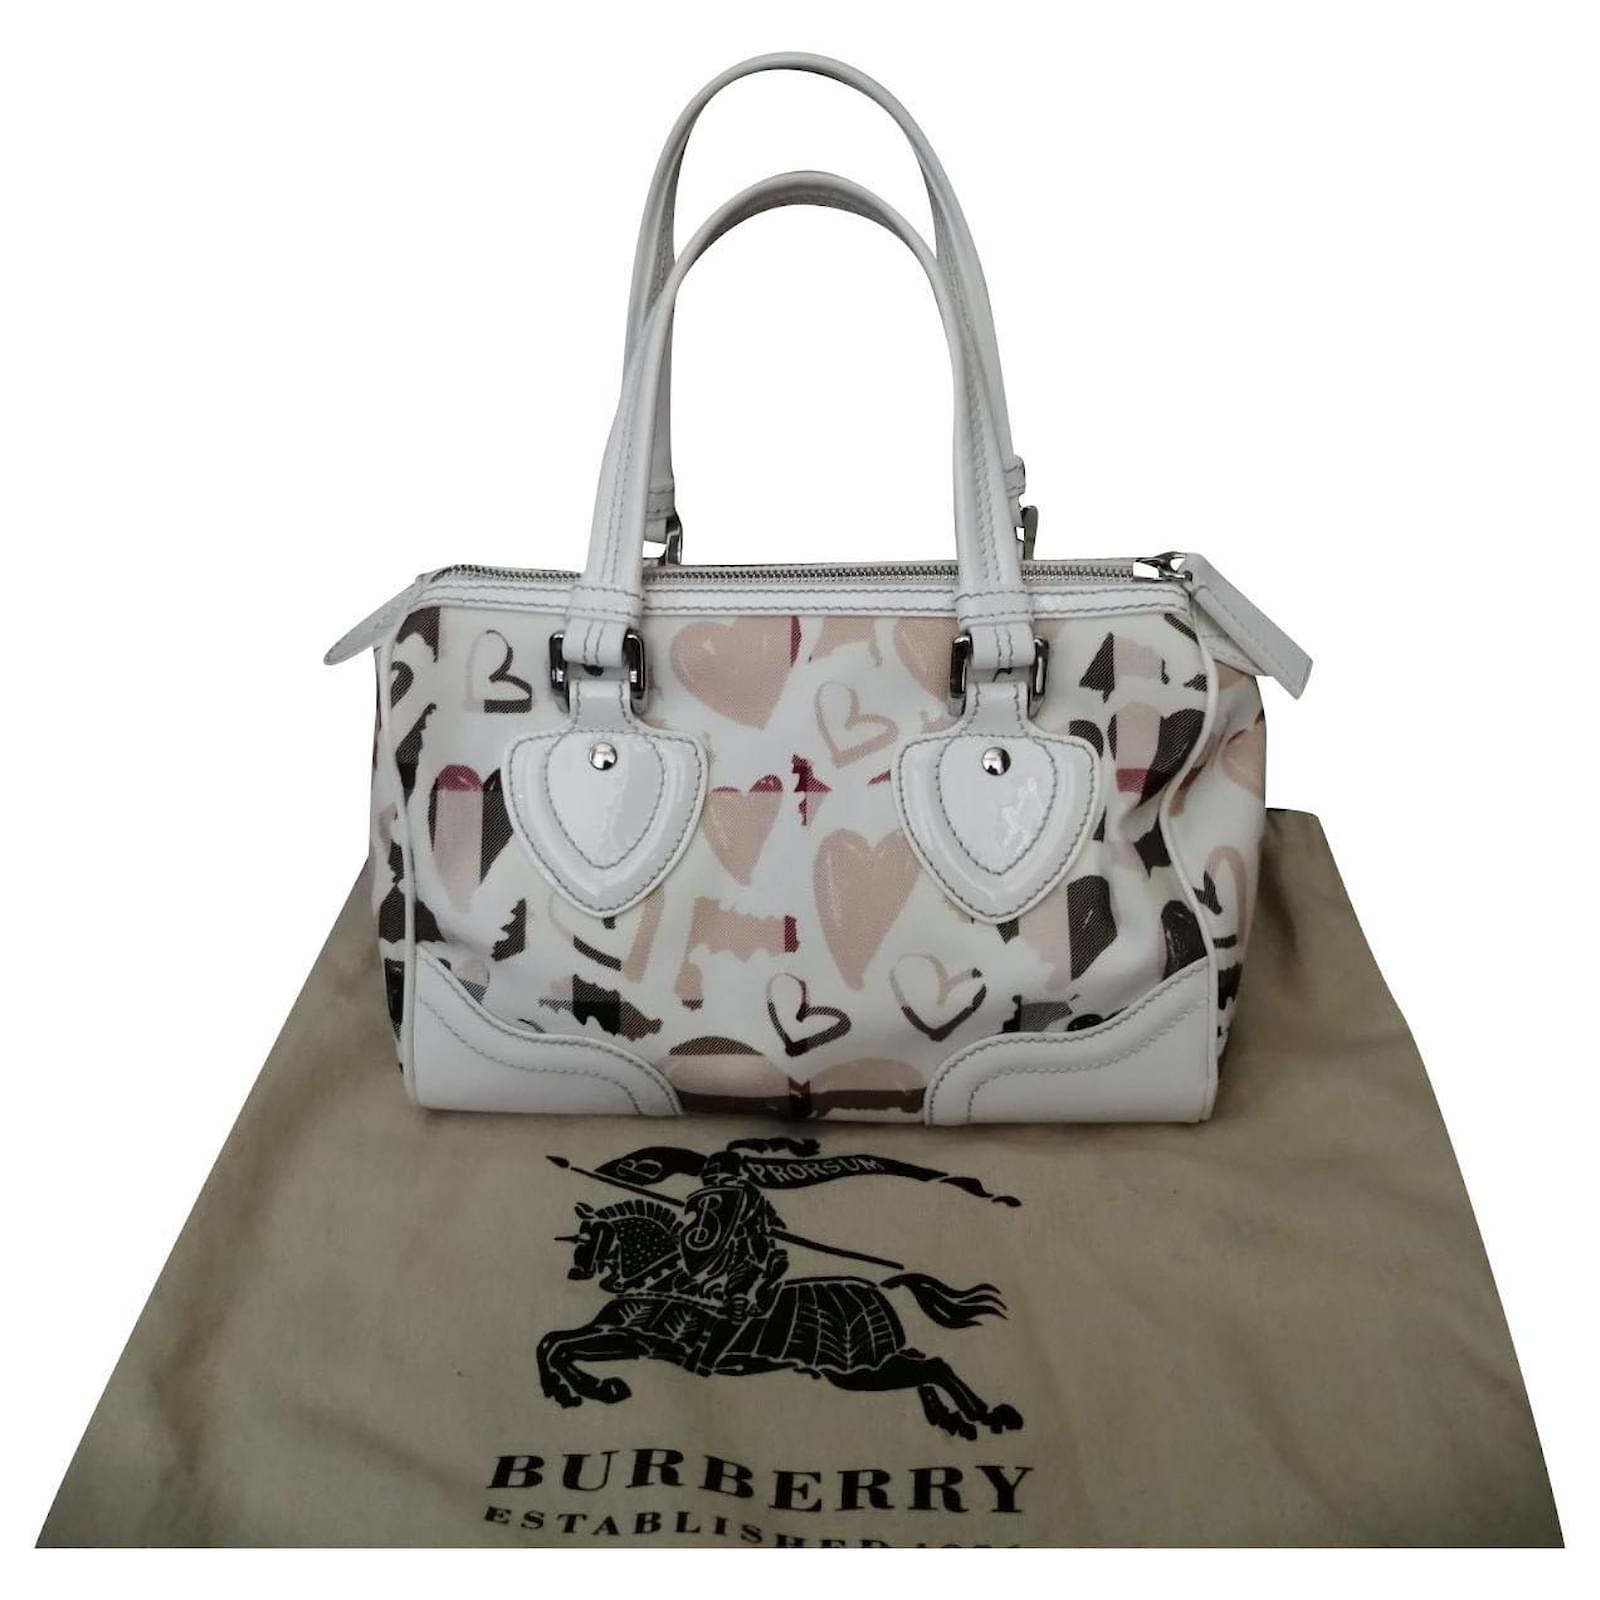 Burberry 'bowling' Handbag